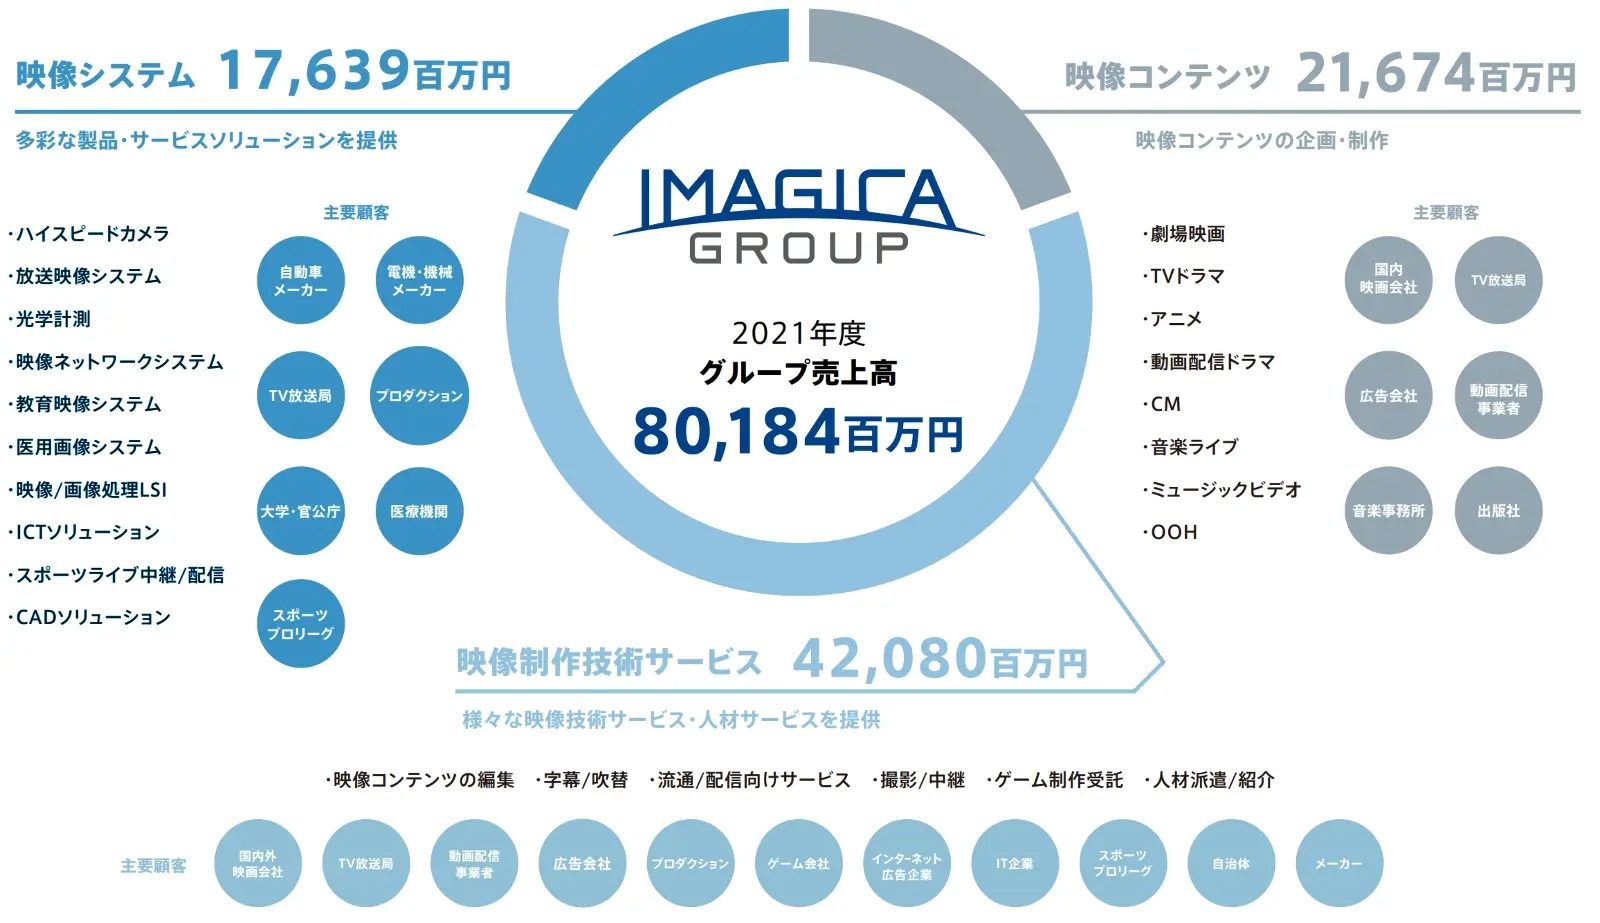 IMAGICA GROUP 2021年度グループ売上高80,184百万円 映像制作技術サービス 42,080百万円 映像コンテンツ 21,674百万円 映像システム 17,639百万円